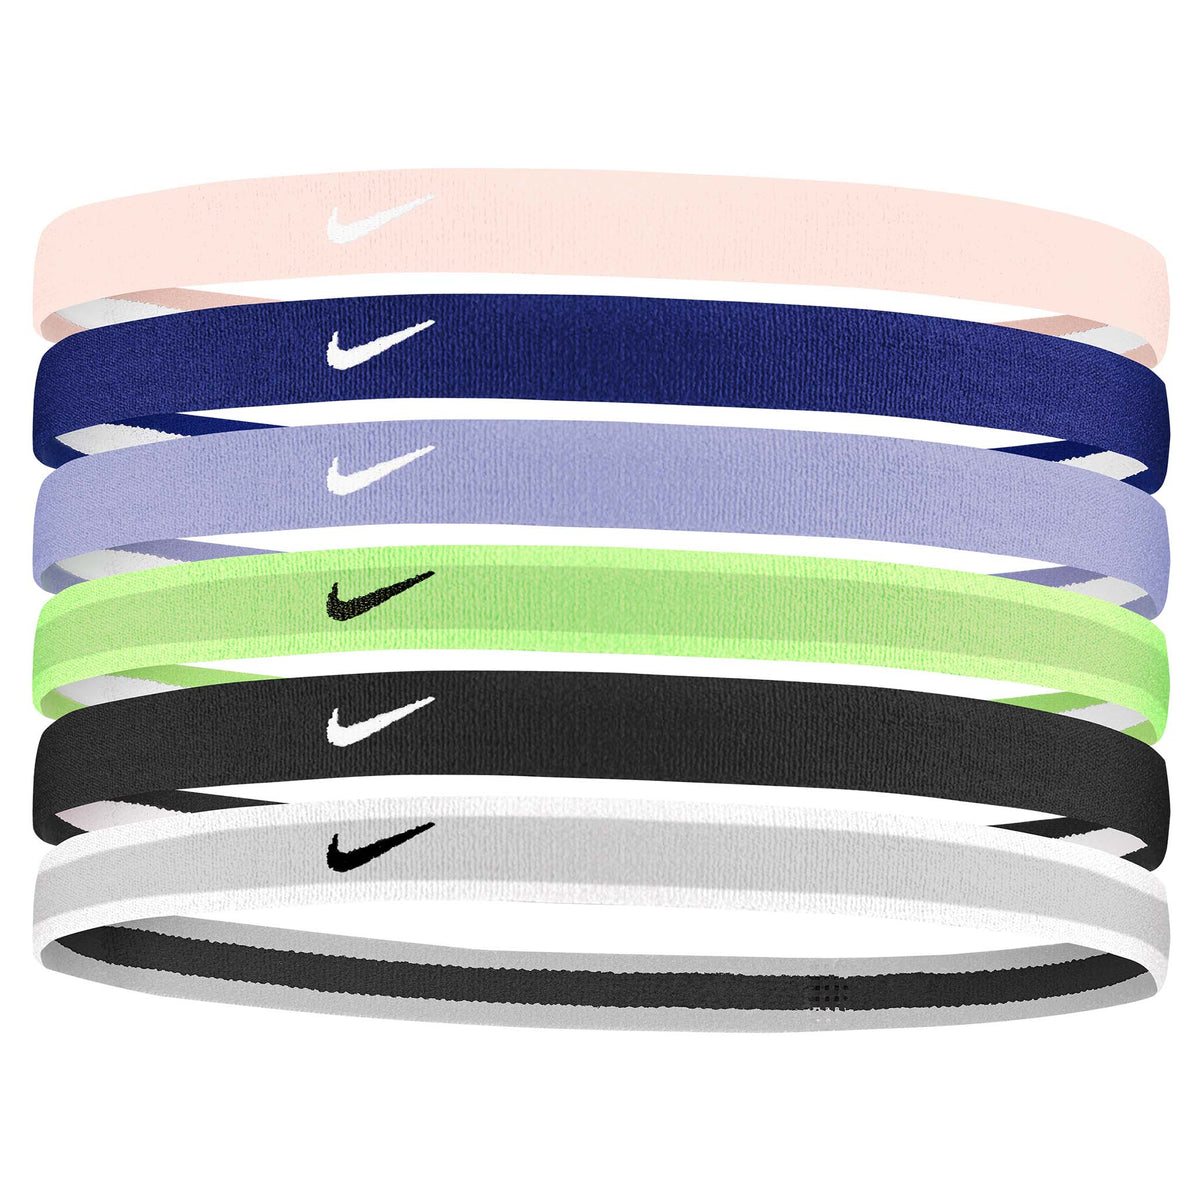 Nike Youth Swoosh Headbands 6pk bandeaux sport pour cheveux -enfant -Pink Foam / Lapis / White